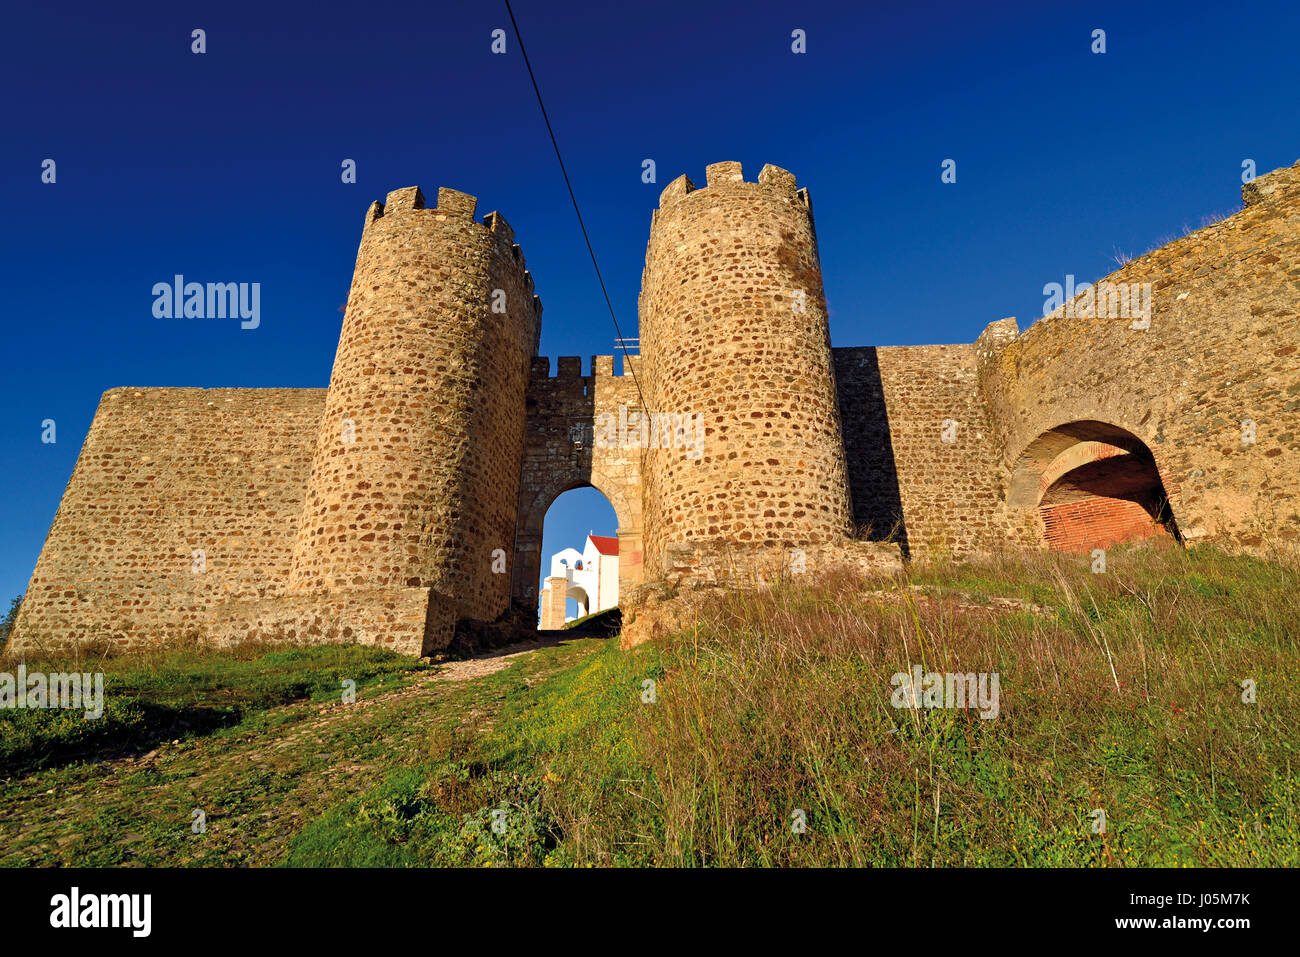 Portogallo: ingresso e torri del castello medievale di Evoramonte Foto Stock